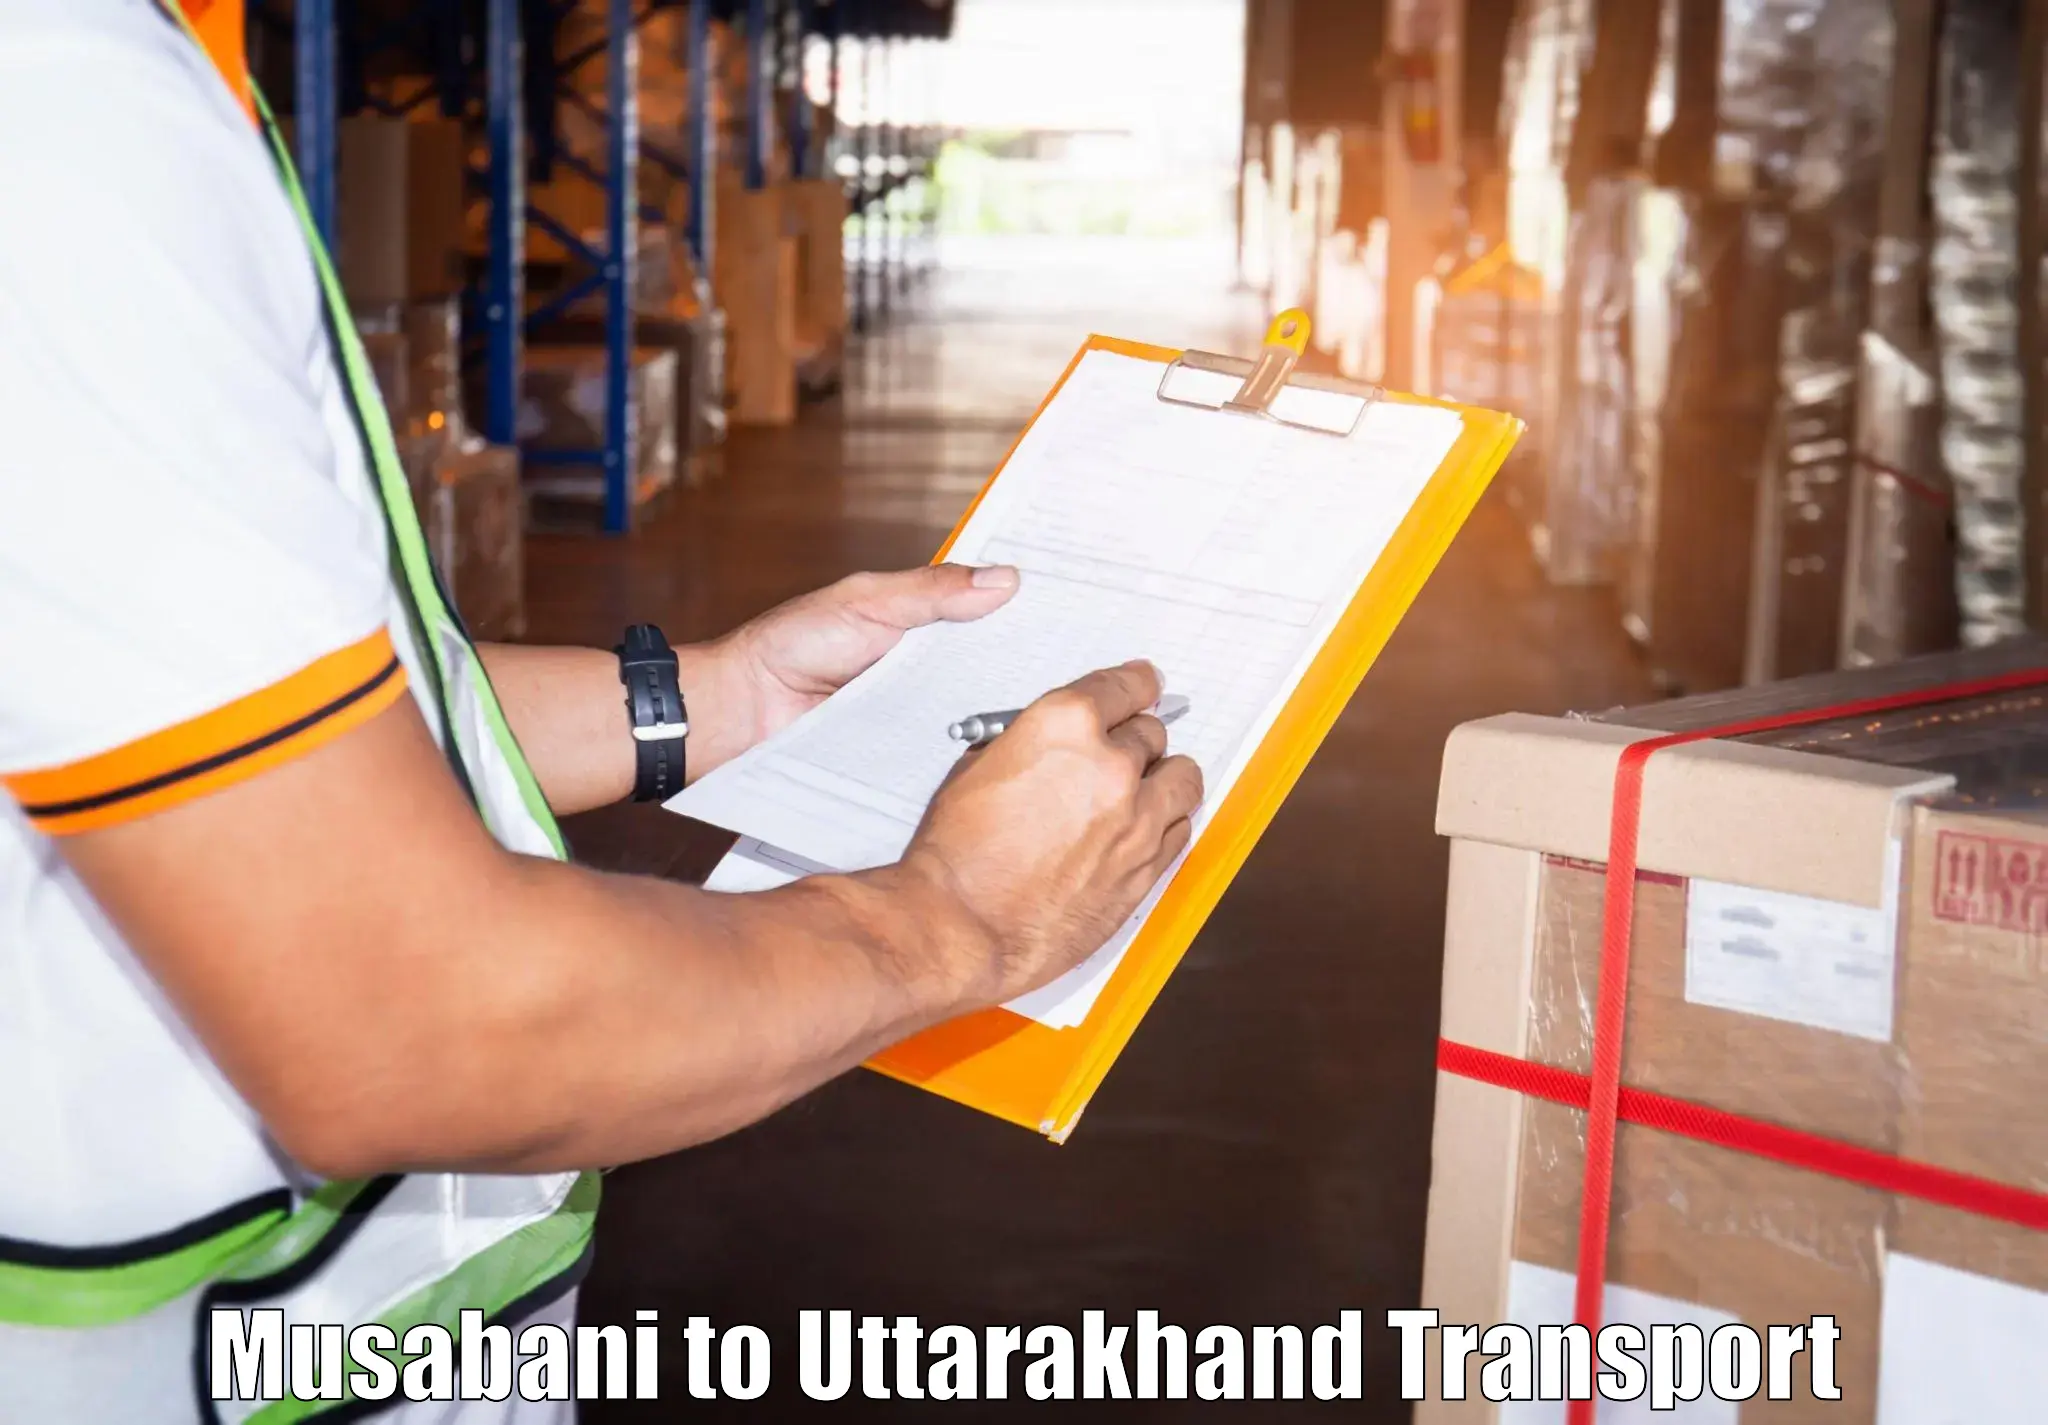 Delivery service Musabani to Uttarakhand